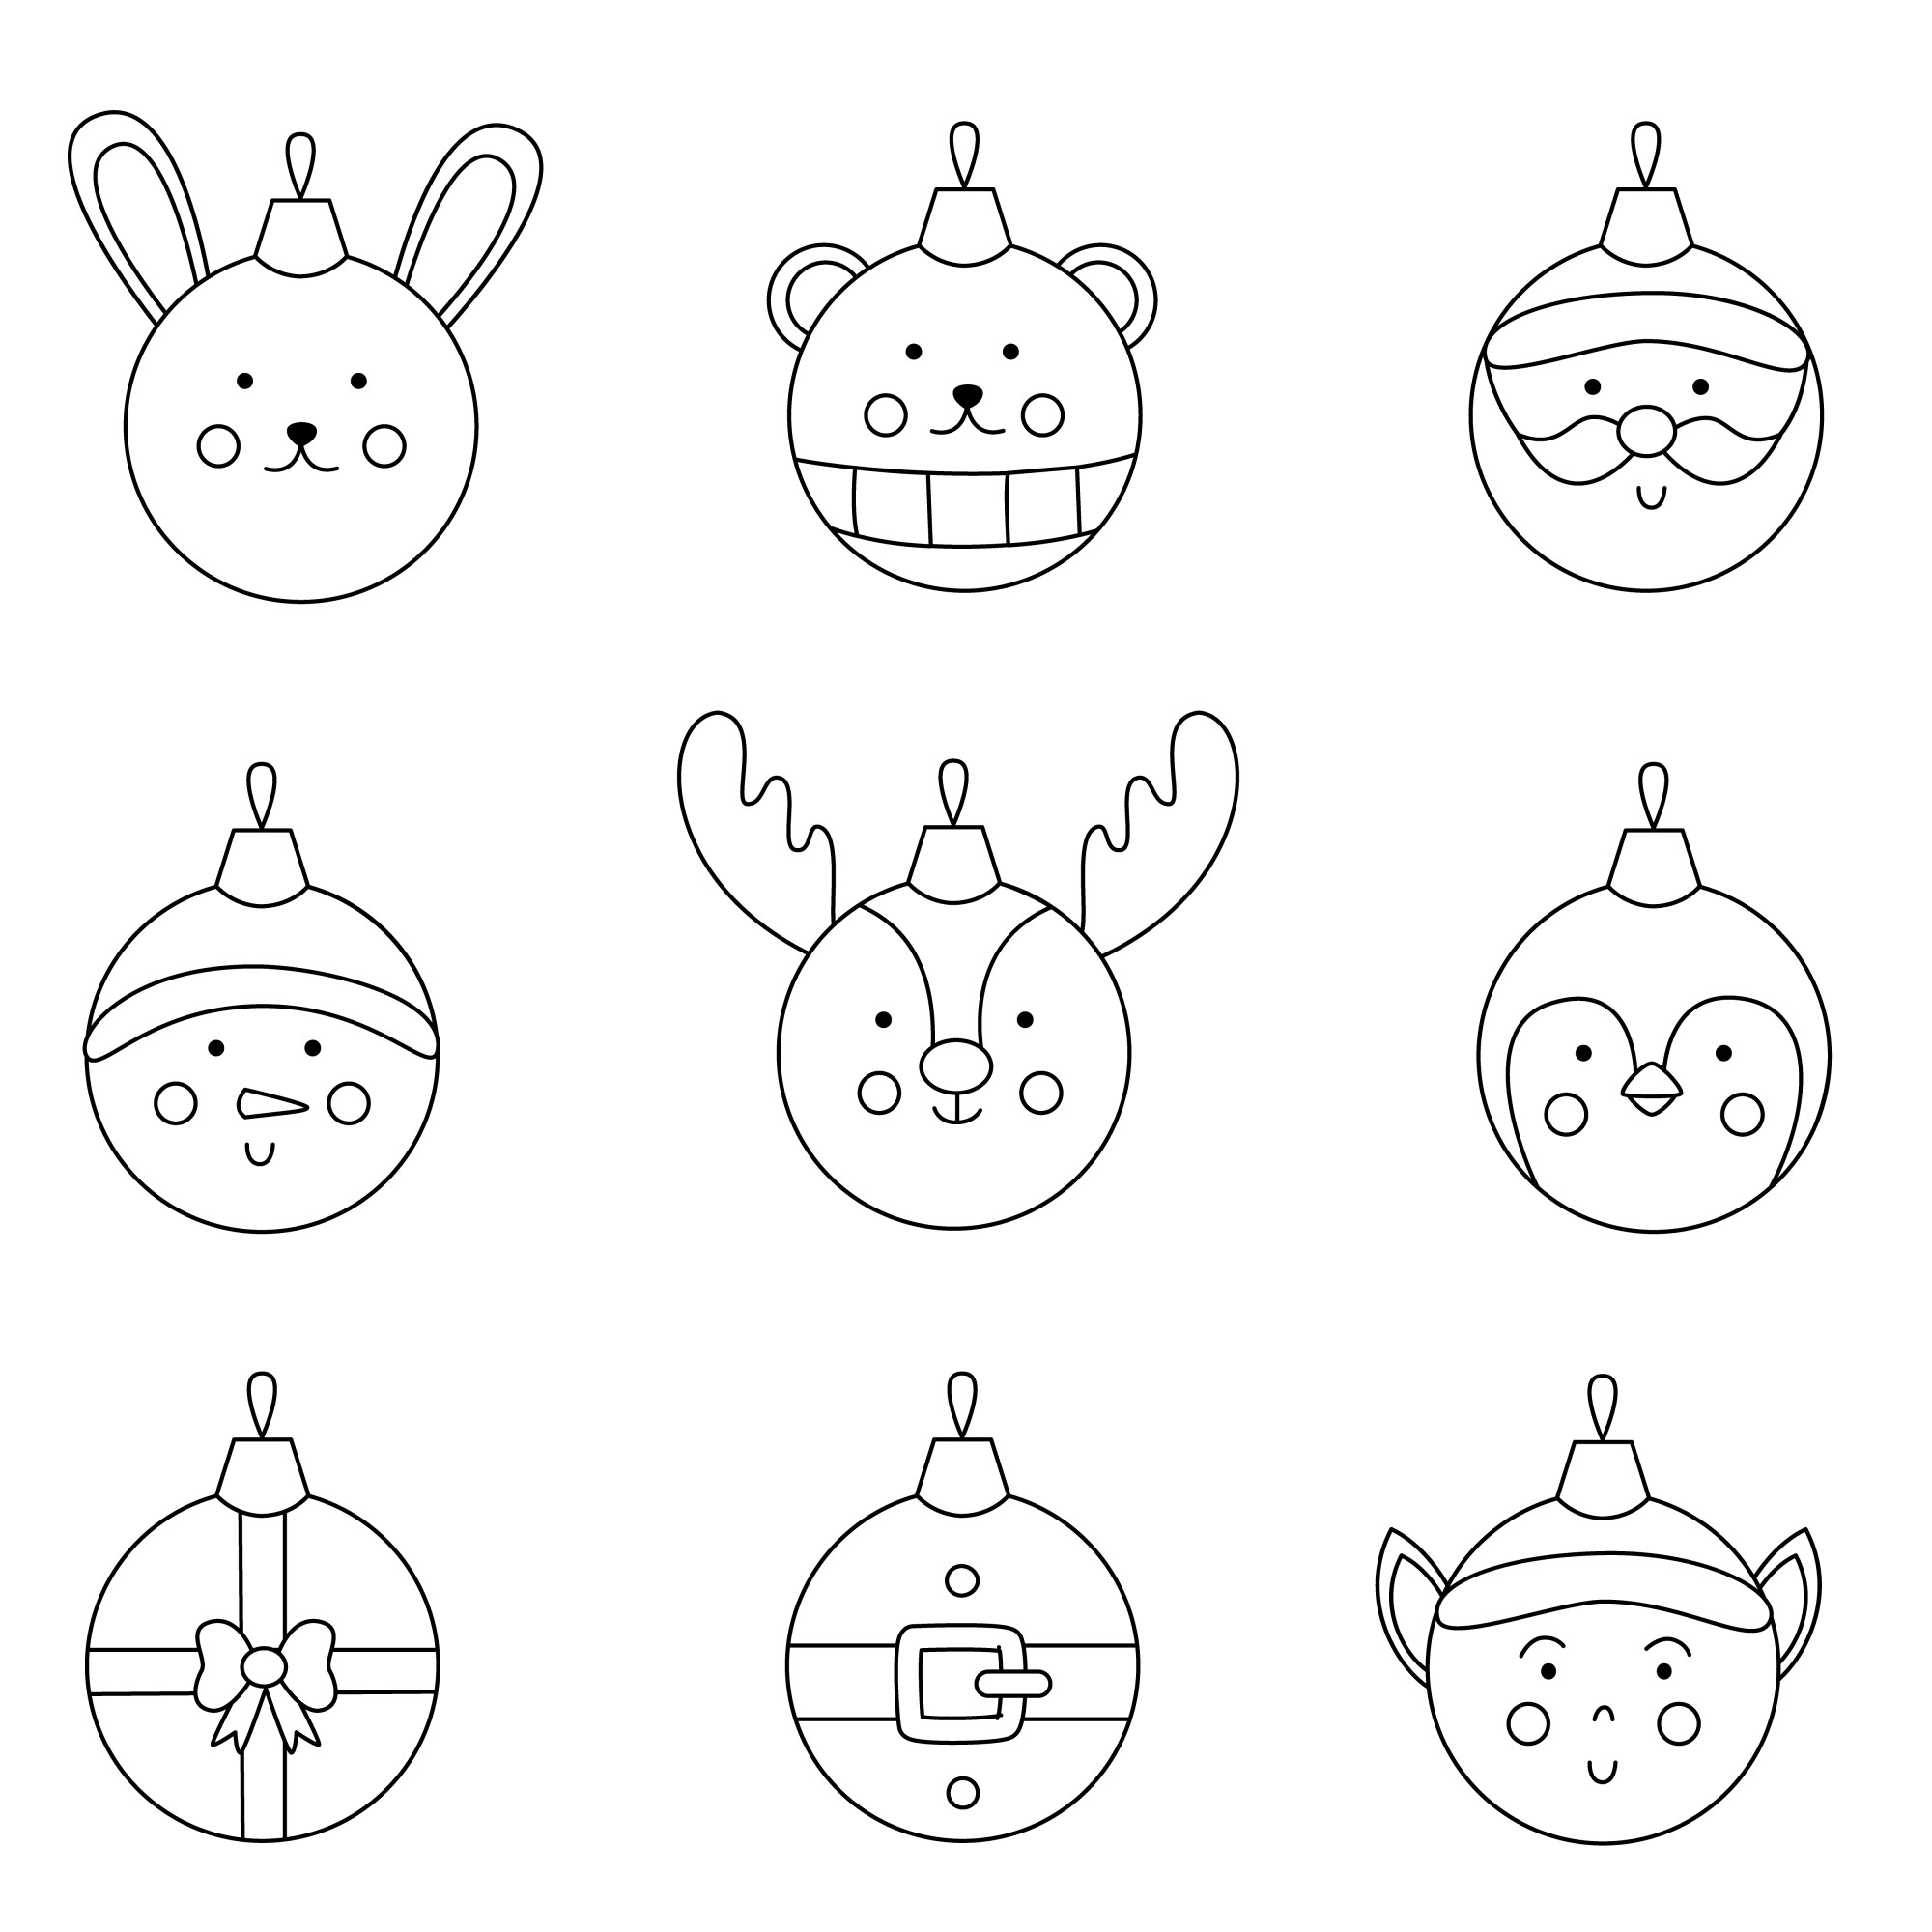 Раскраска для детей: коллекция ёлочных шаров с лицами животных